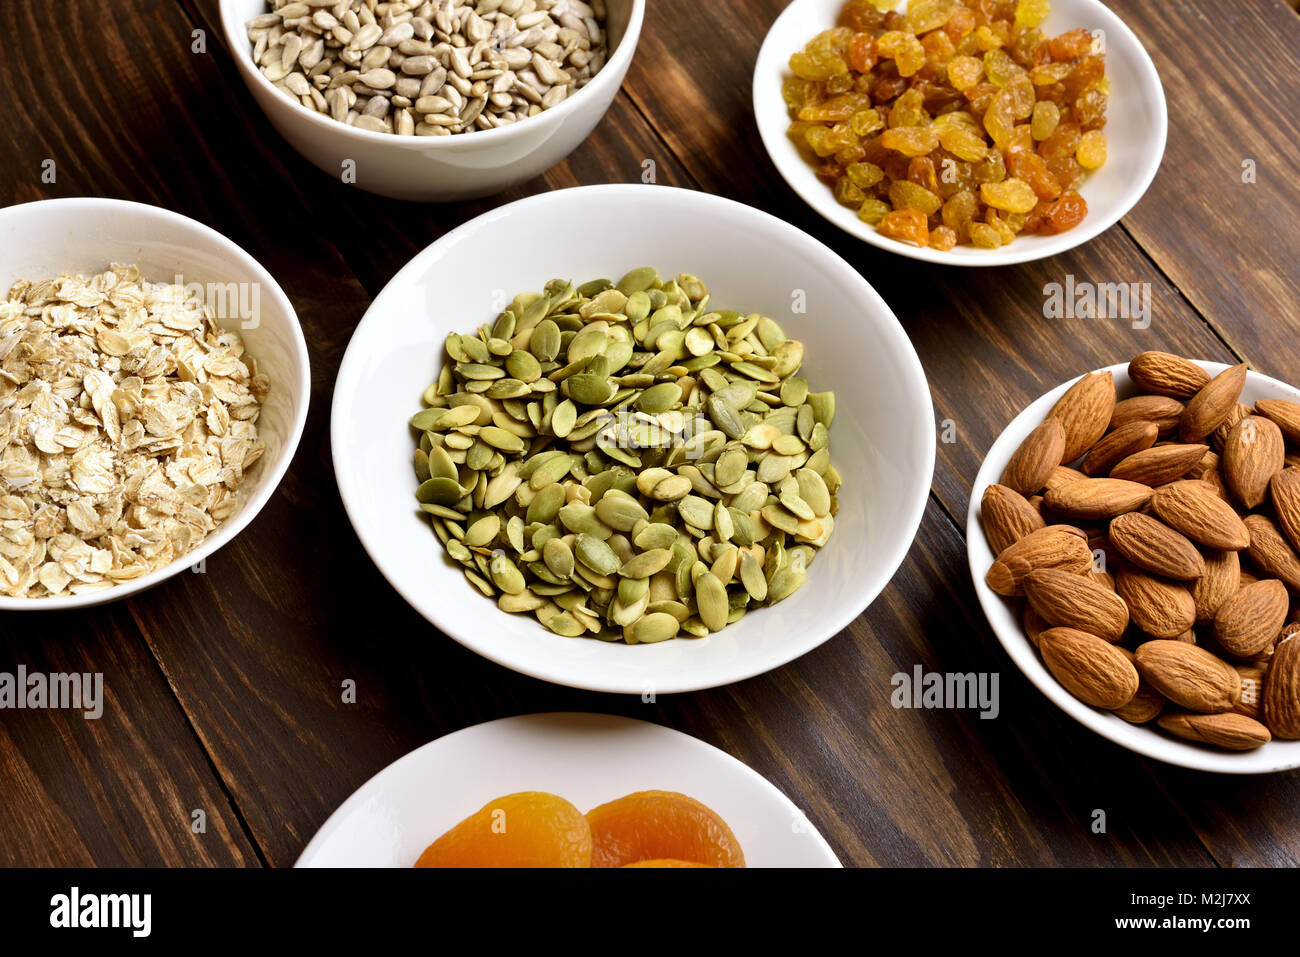 Ingrédients pour la cuisson des céréales dans un bol sur la table en bois. Snack-naturels sains. La nourriture végétalienne végétarienne. Banque D'Images